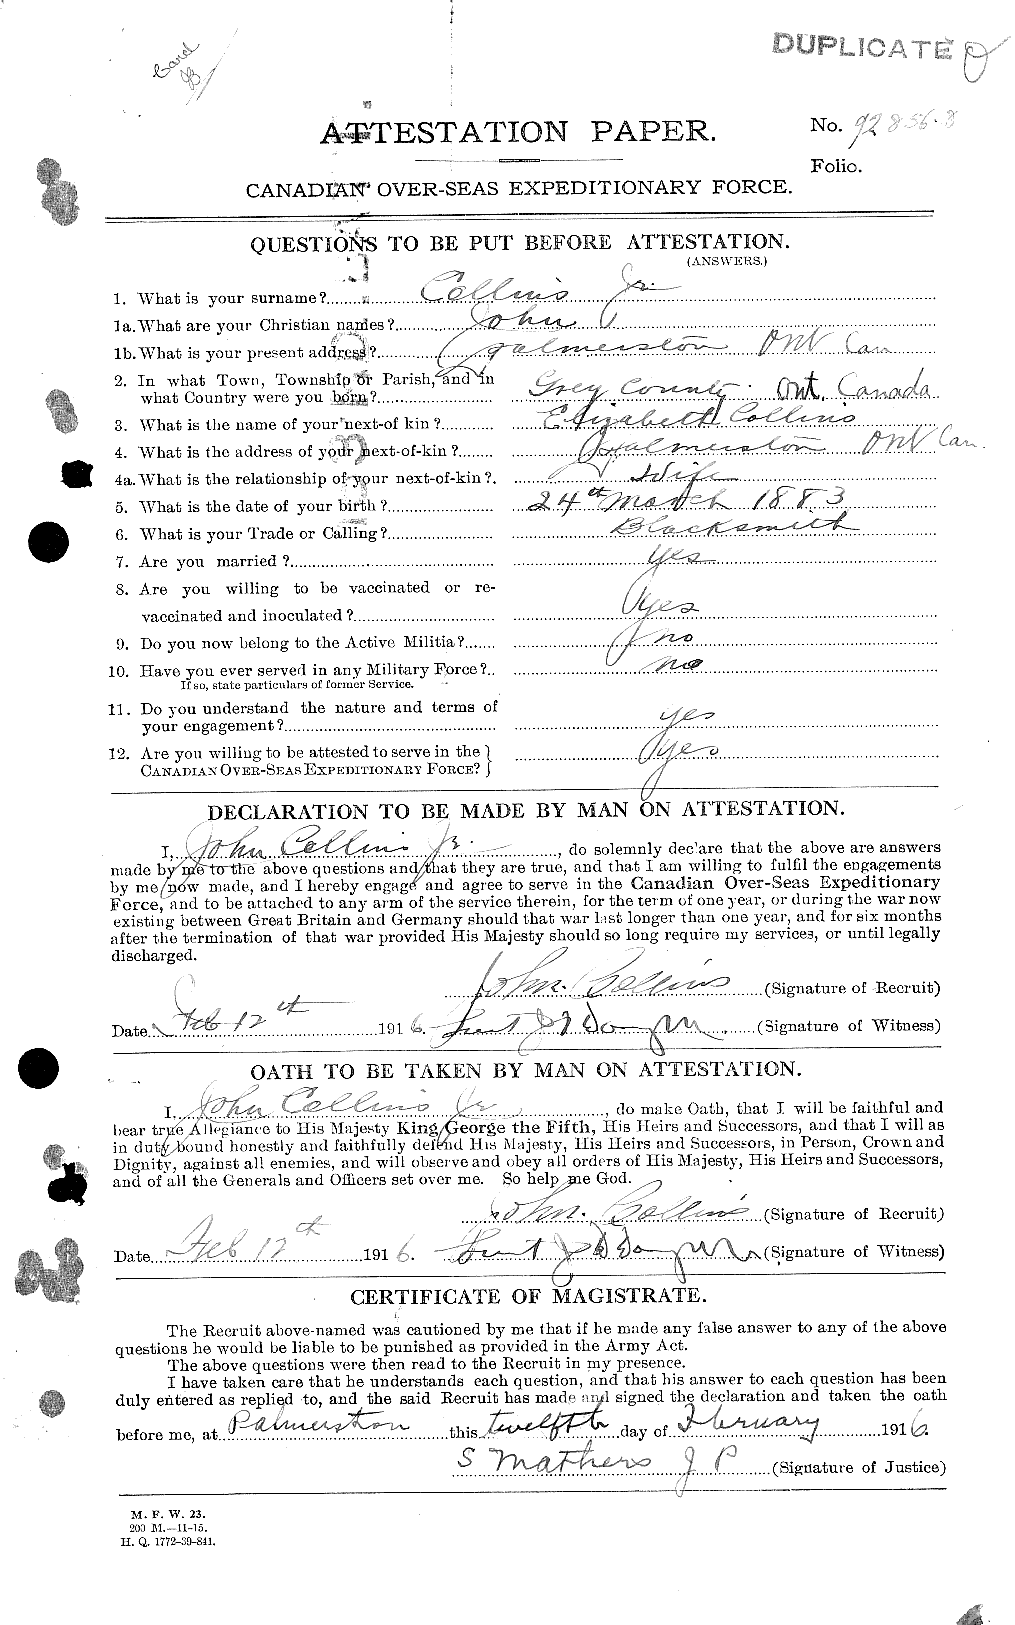 Dossiers du Personnel de la Première Guerre mondiale - CEC 037985a